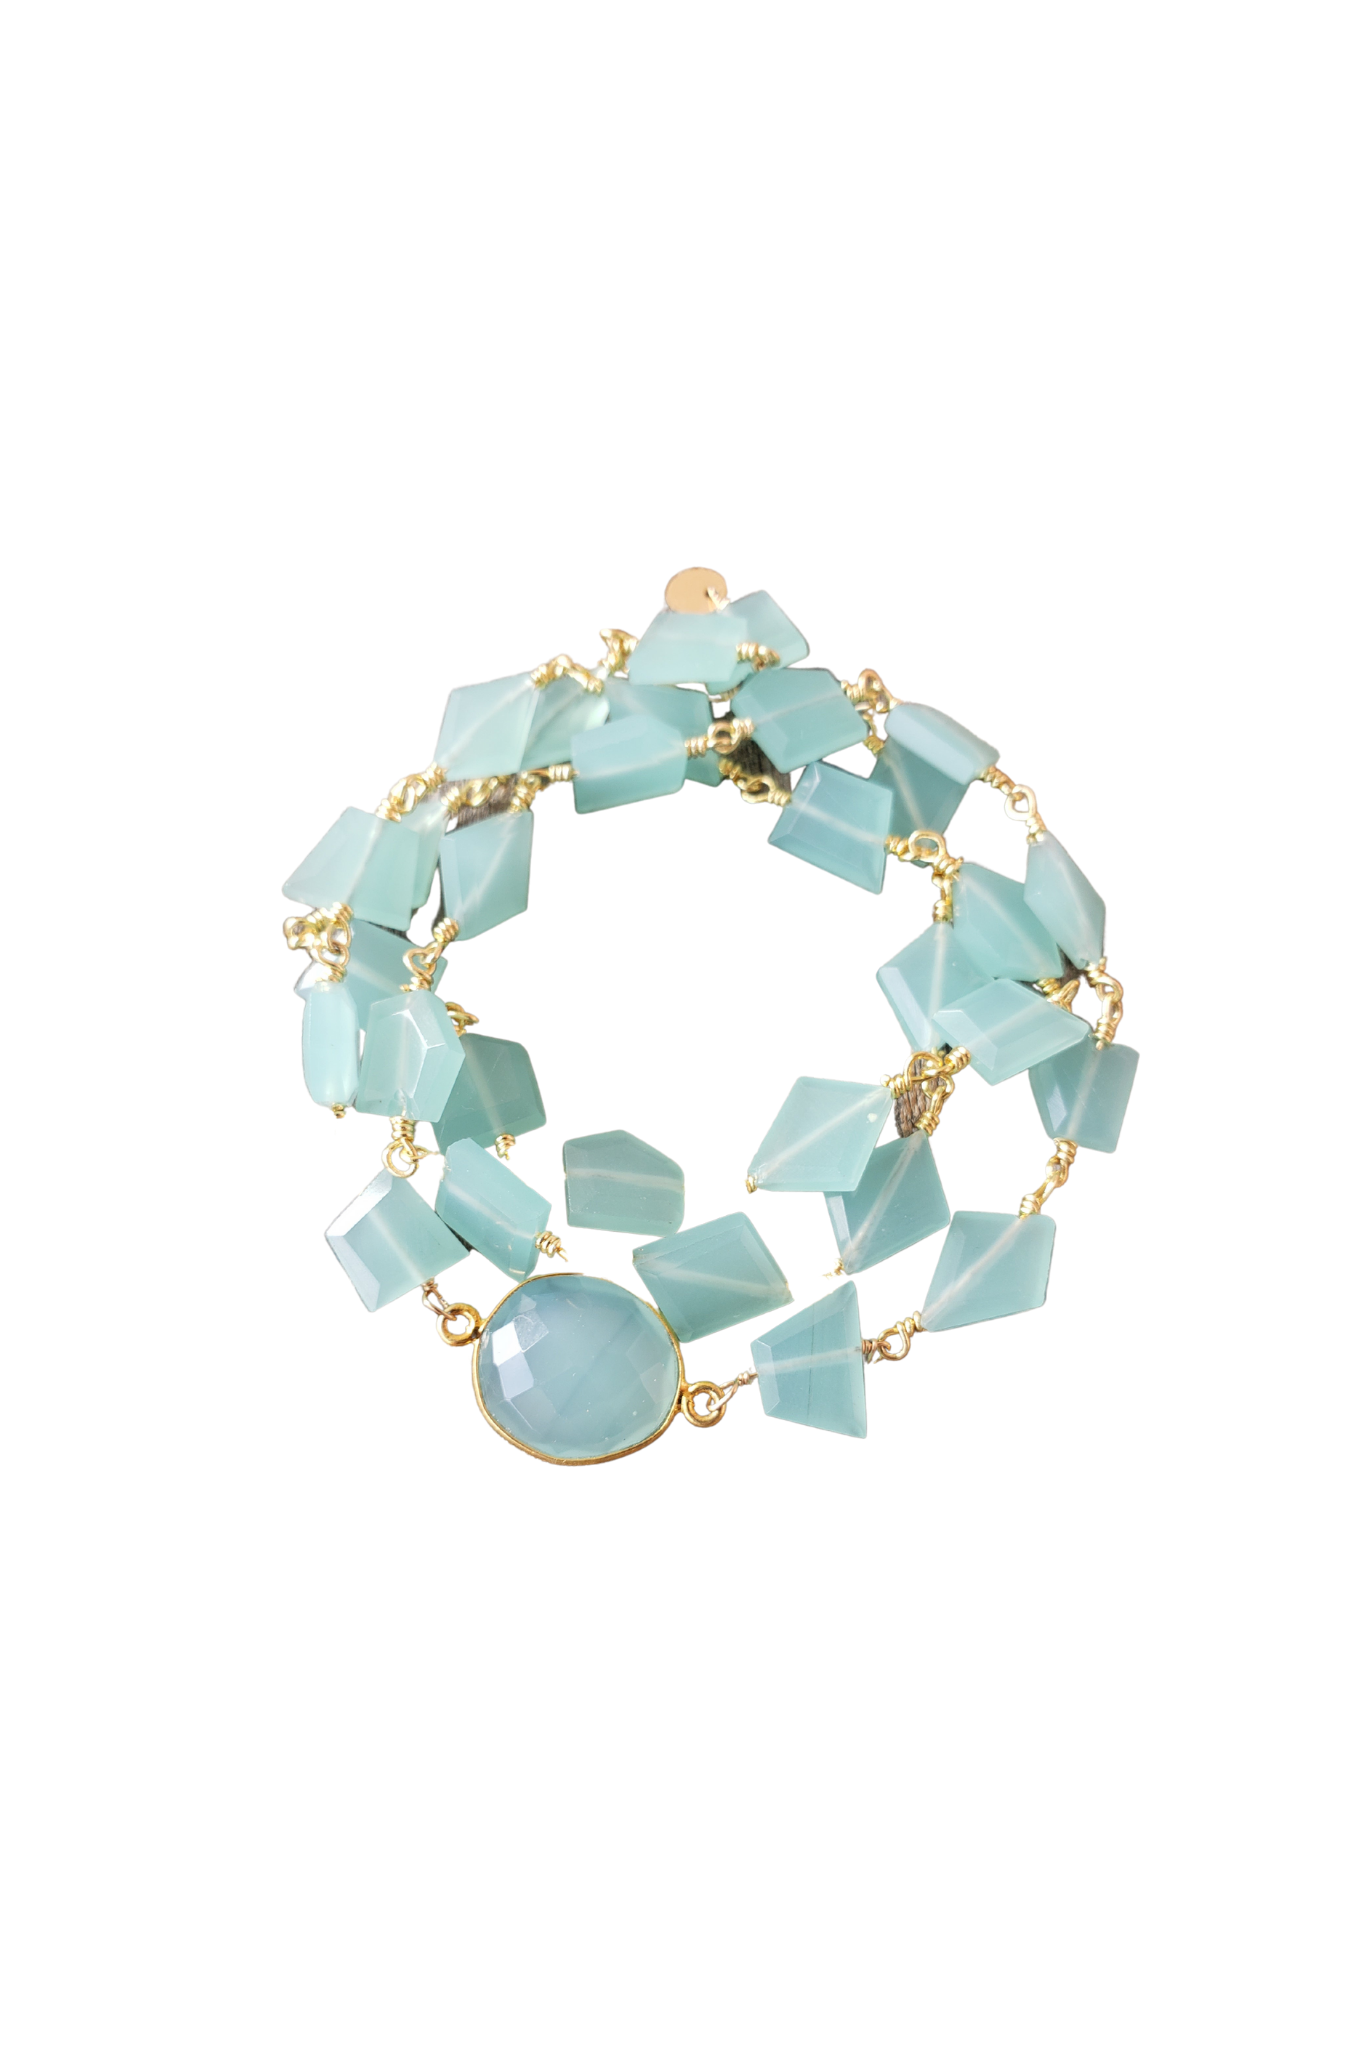 Hana Wrap Bracelet/Necklace in Chalcedony - Chunky Stone